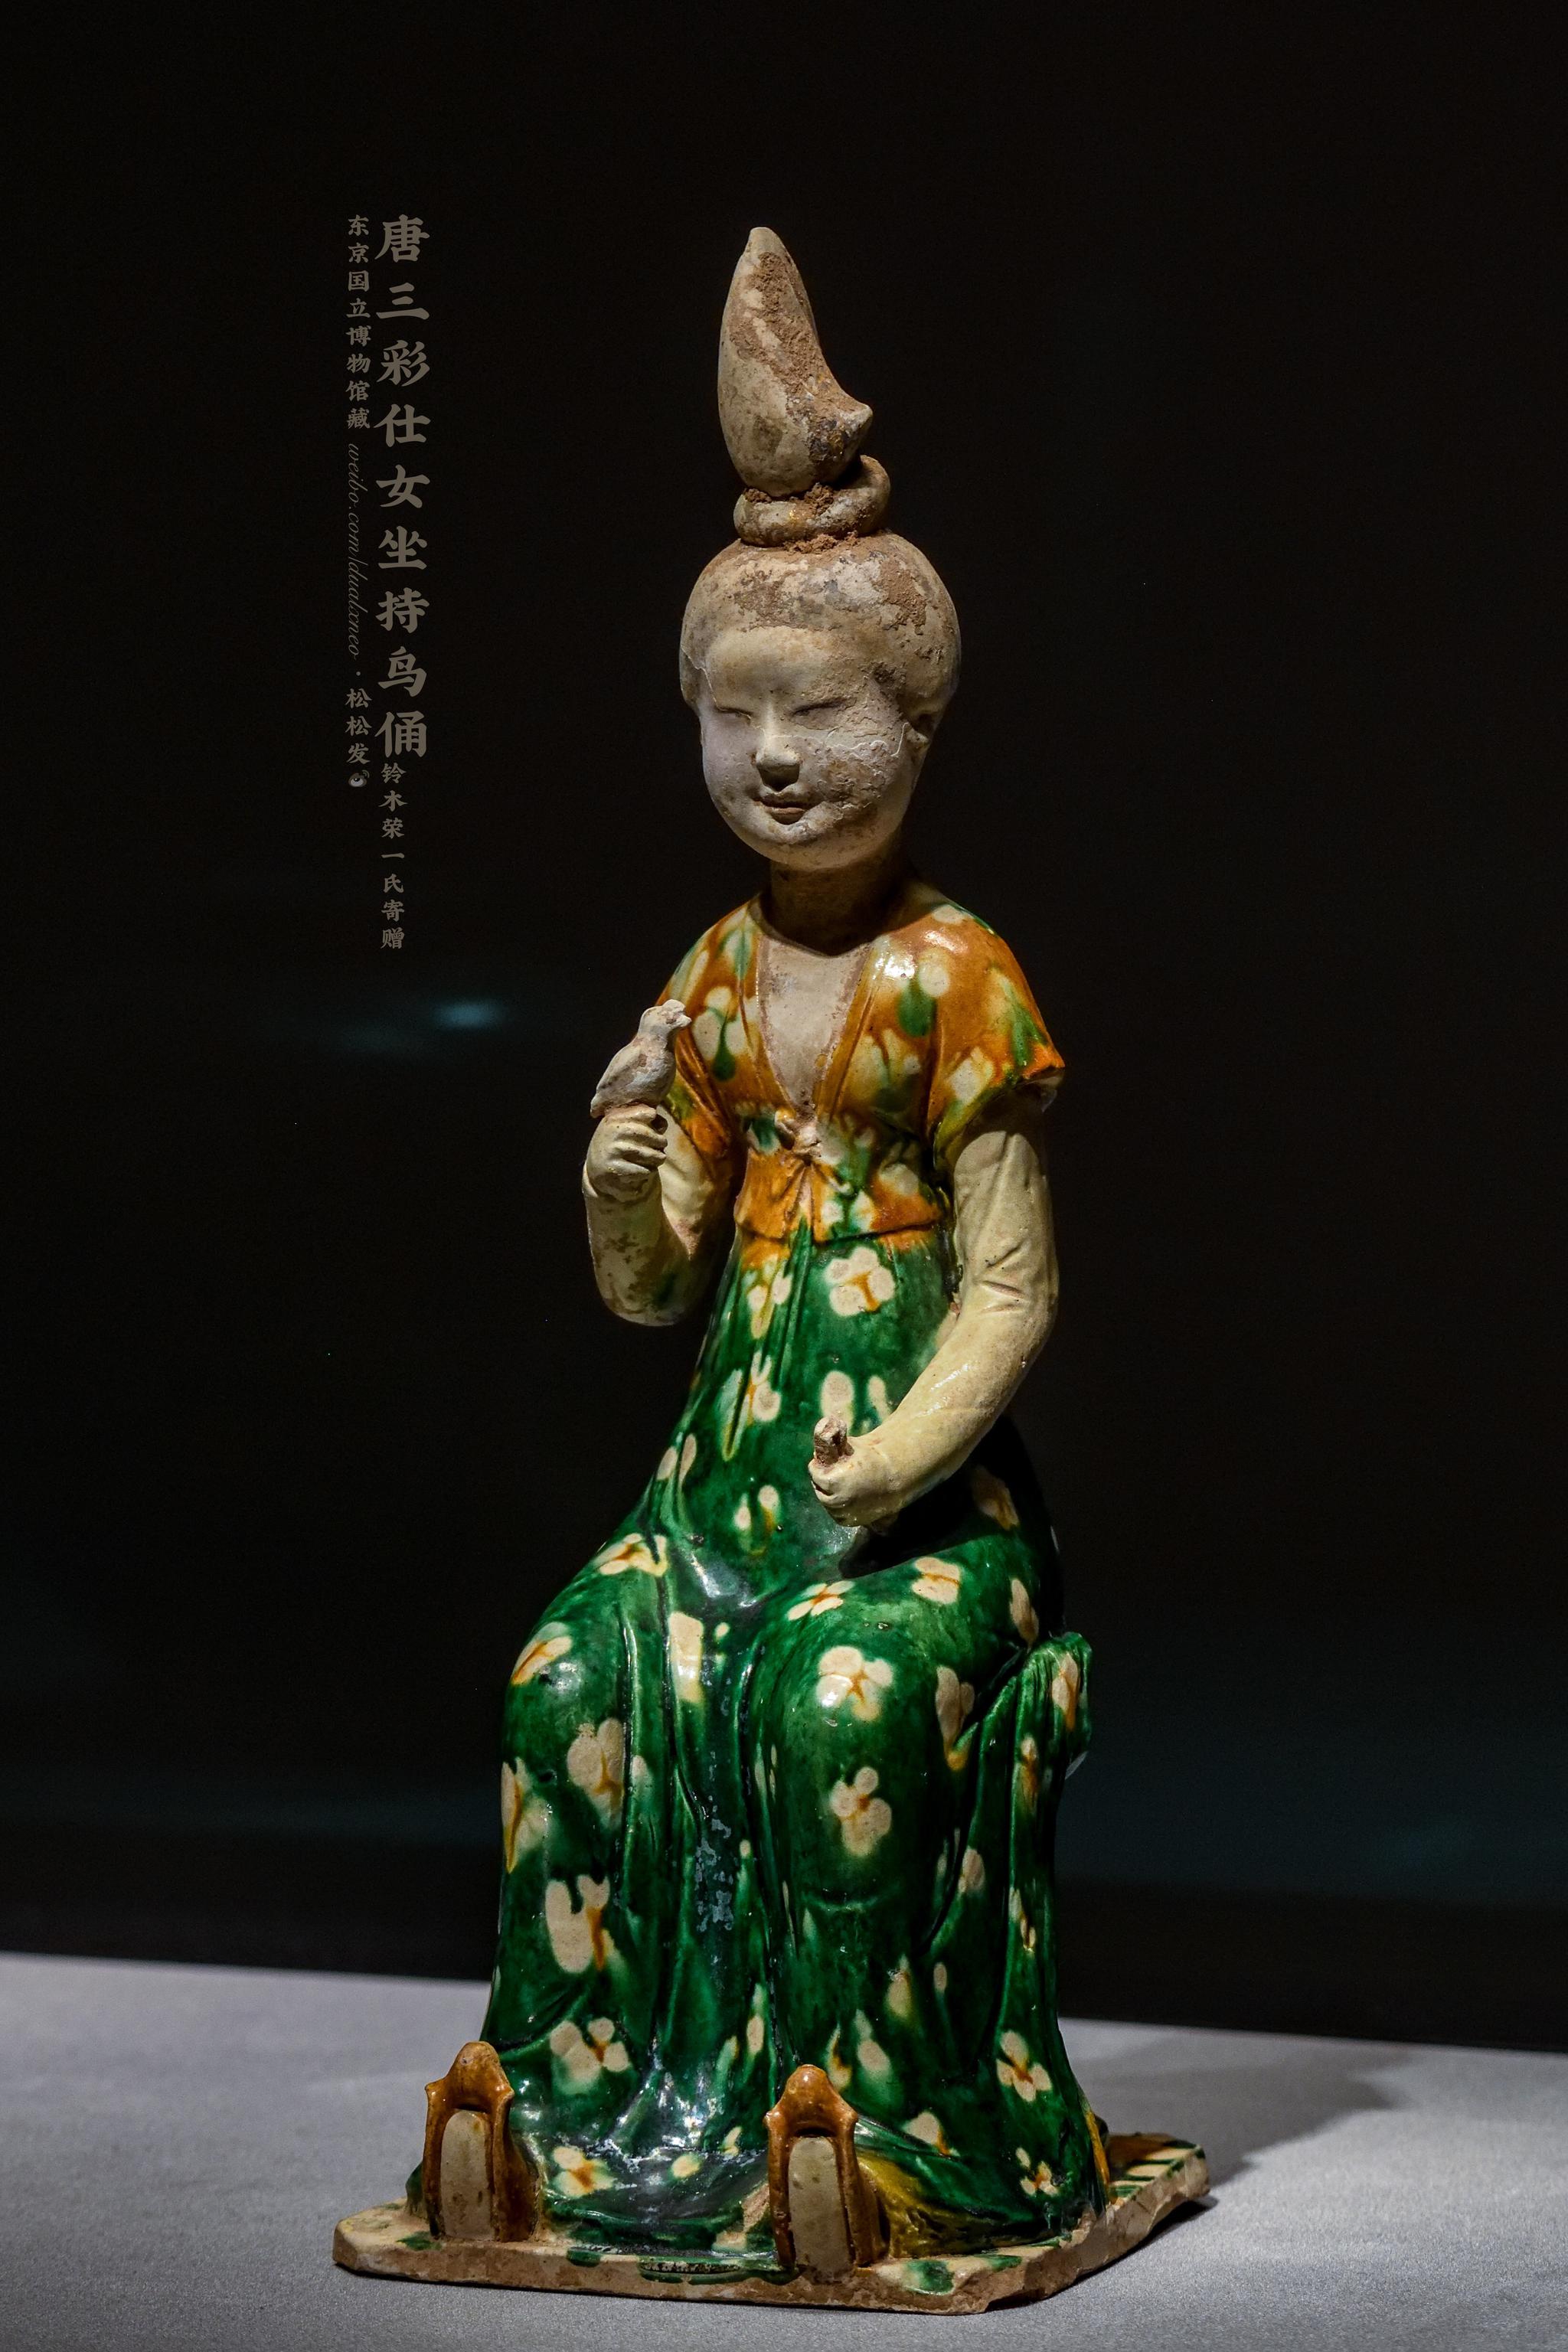 的女子倚坐筌蹄持鸟俑,造型上接近西安王家坟90号墓出土的唐三彩女俑